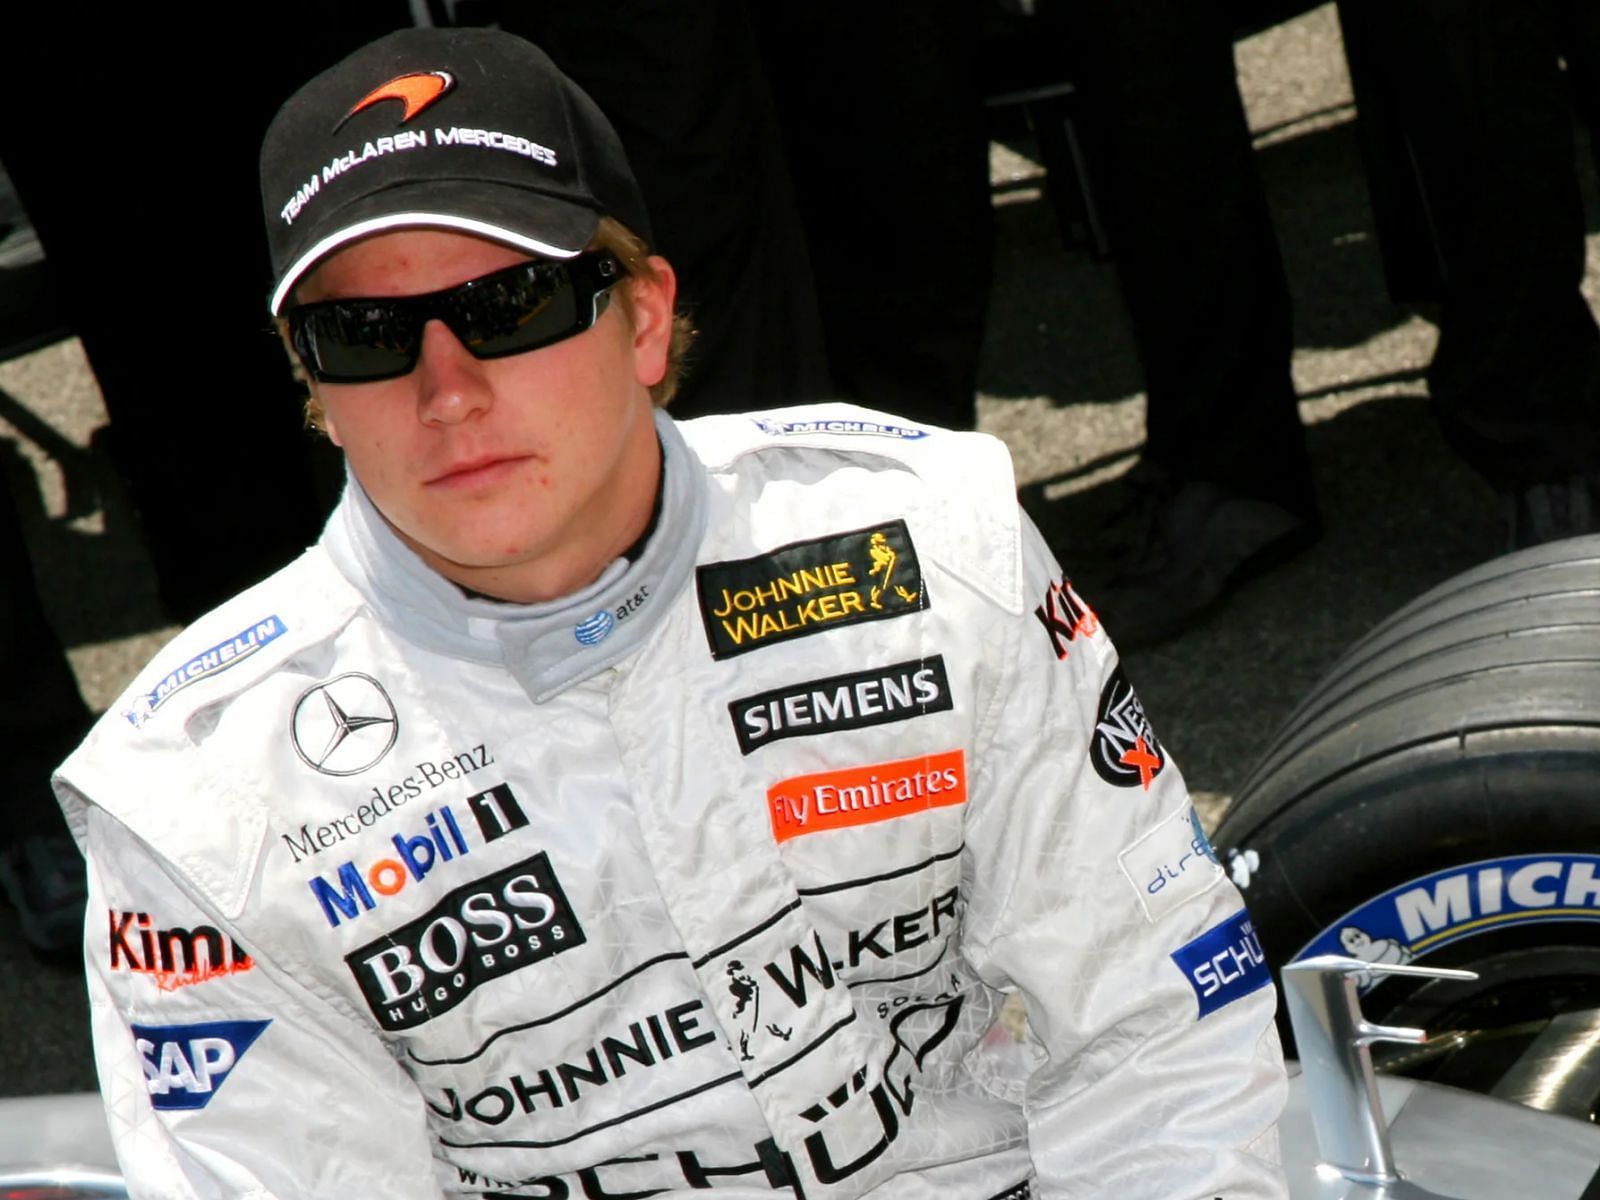 Kimi Raikkonen in McLaren in 2006 (Image via F1 Authentics content pool)